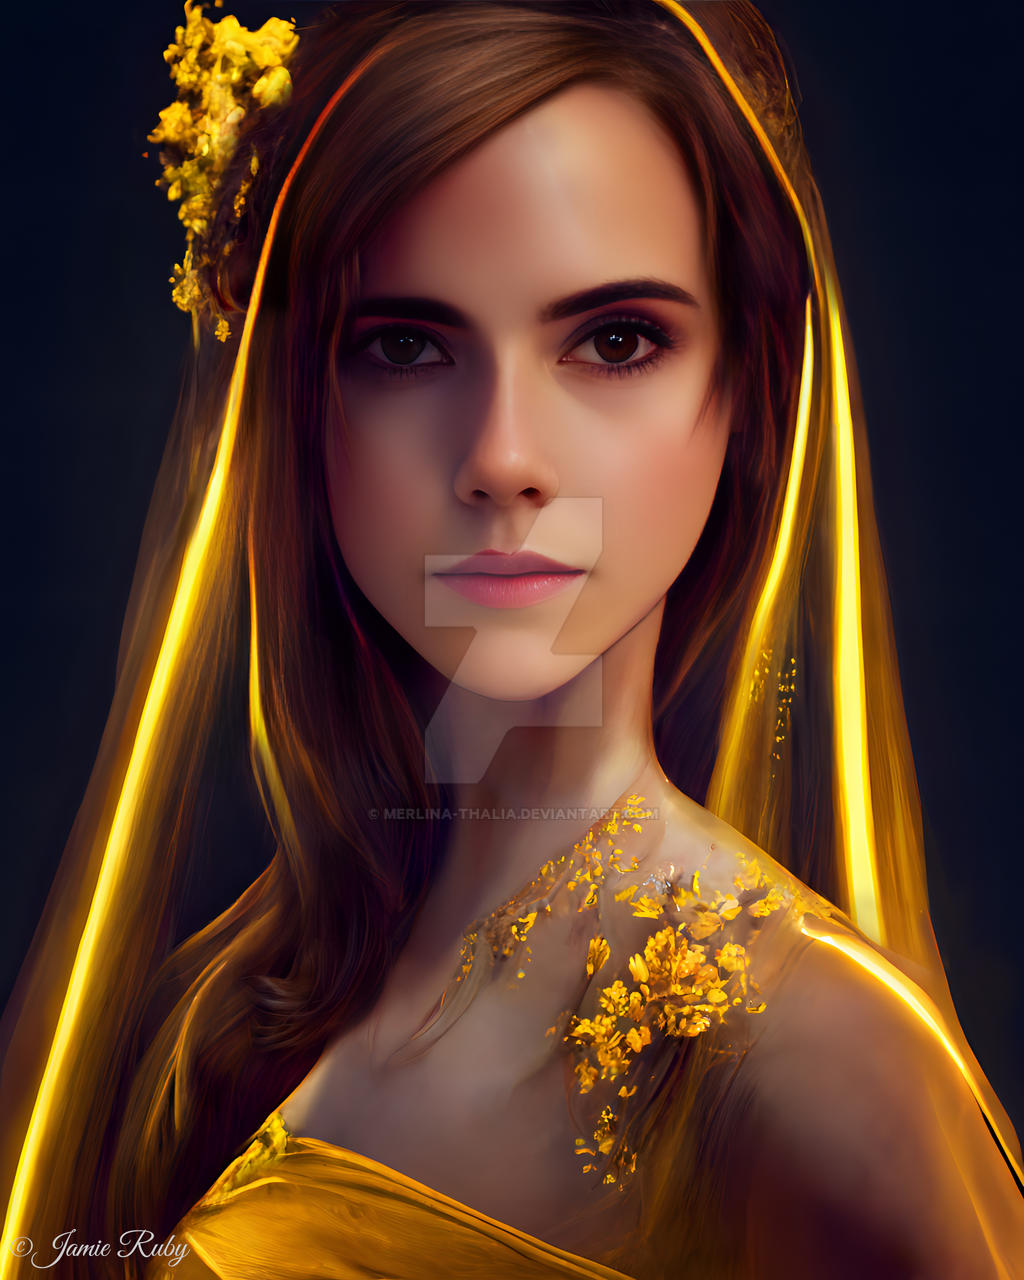 Emma Watson as Belle by merlina-thalia on DeviantArt